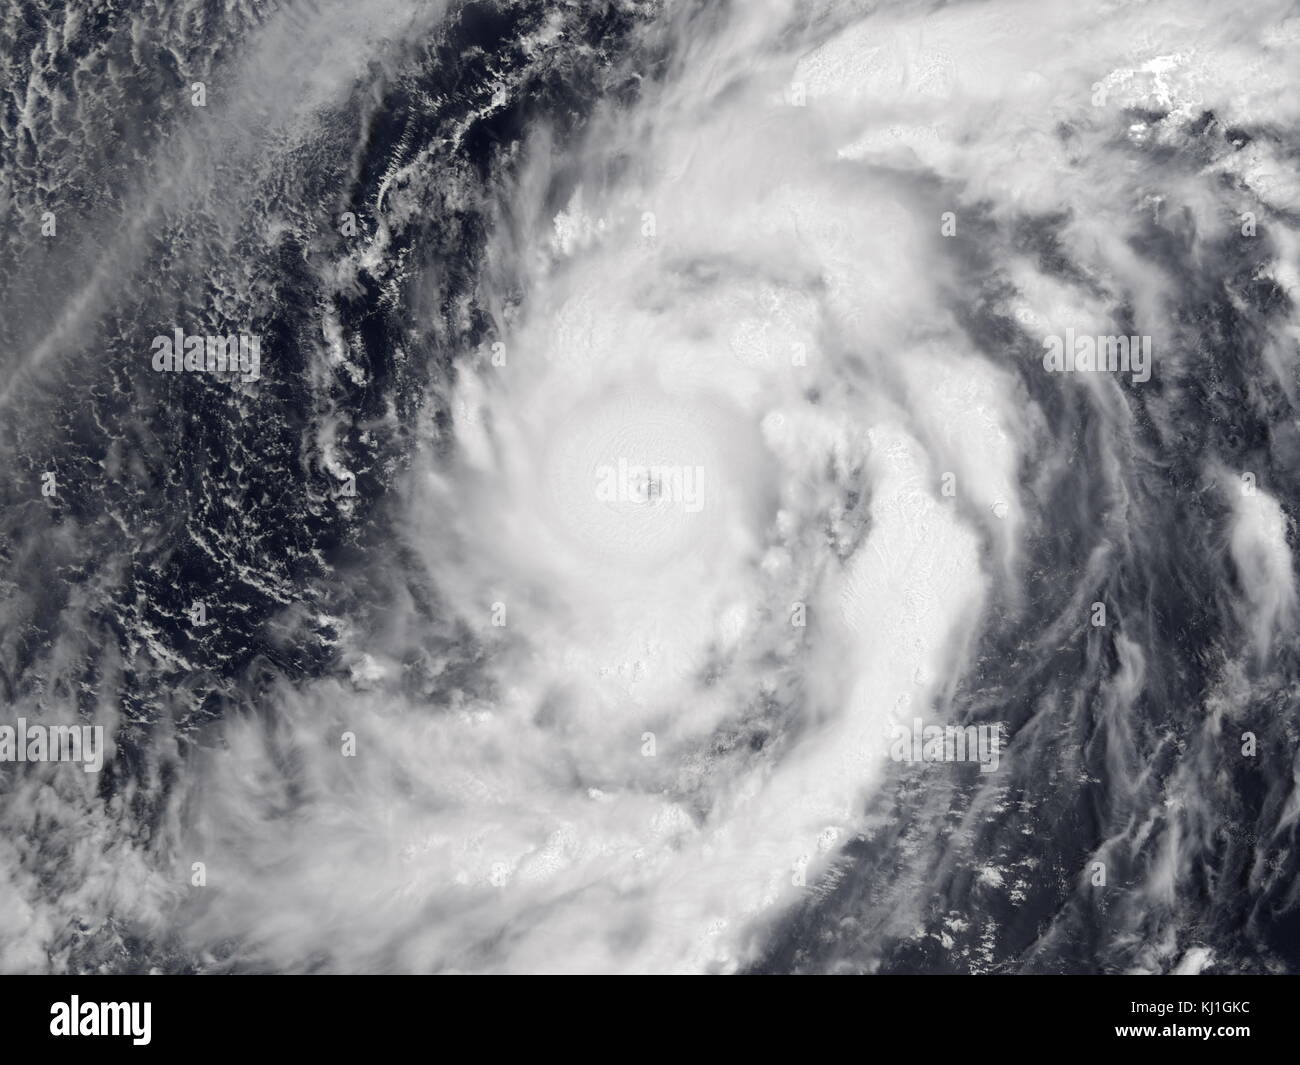 El tifón Damrey era una categoría 5, super tifón el 9 de mayo de 2000. Fue la primera tormenta de la temporada de tifones de área del Océano Pacífico. Damrey fue el más fuerte desde mayo de tifón tifón Phyllis en 1958. Foto de stock